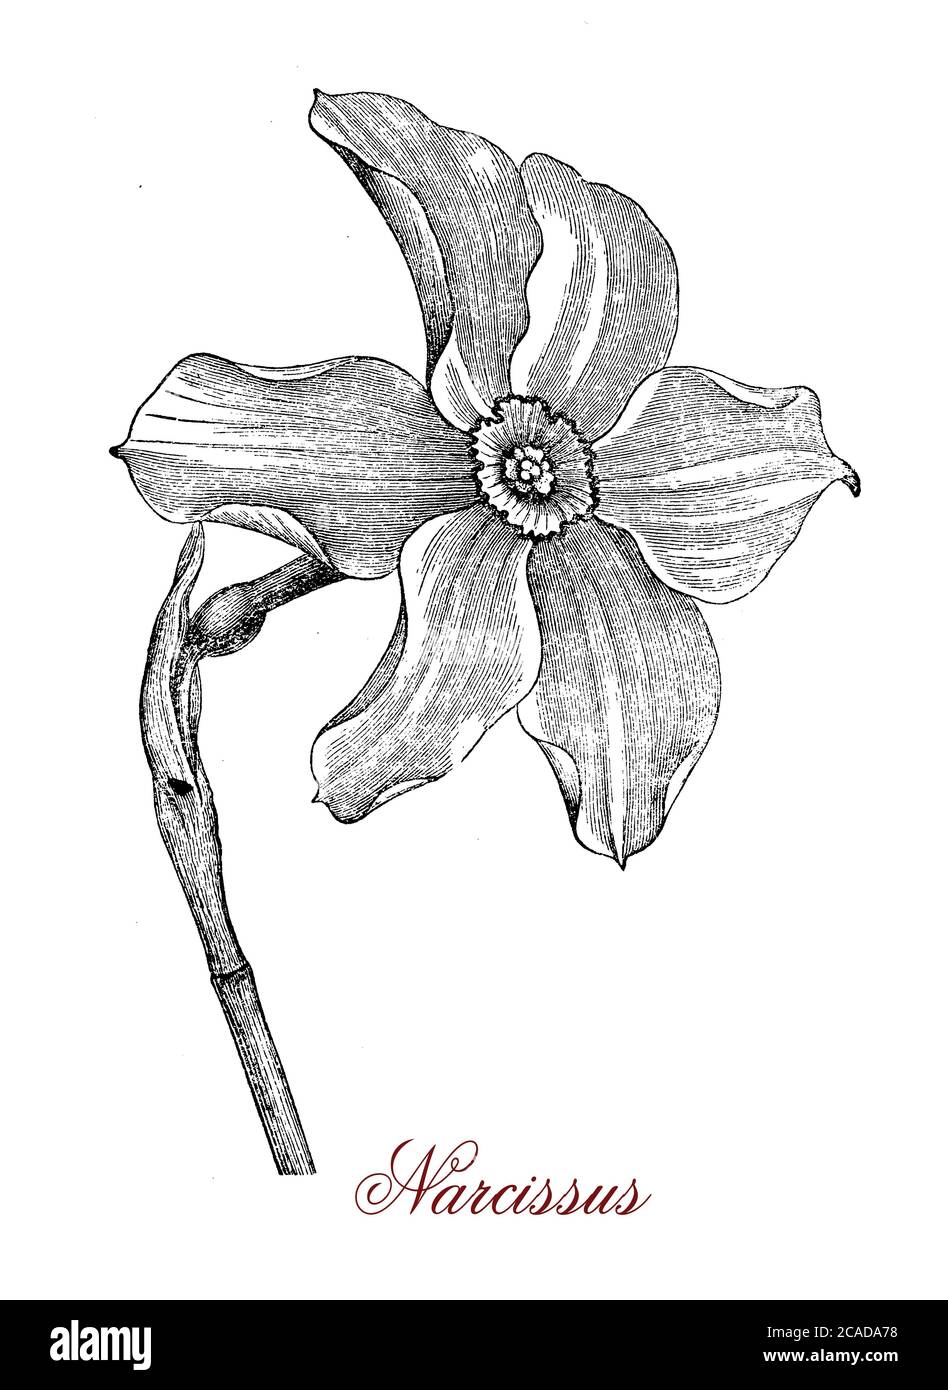 La fleur de Narcisse, nom commun daffodil ou jonquil, de la plante vivace à fleurs de narcisse, est une fleur ostentatoire avec six tepals pétale surmontés d'un corona en forme de trompette généralement blanc ou jaune. Banque D'Images